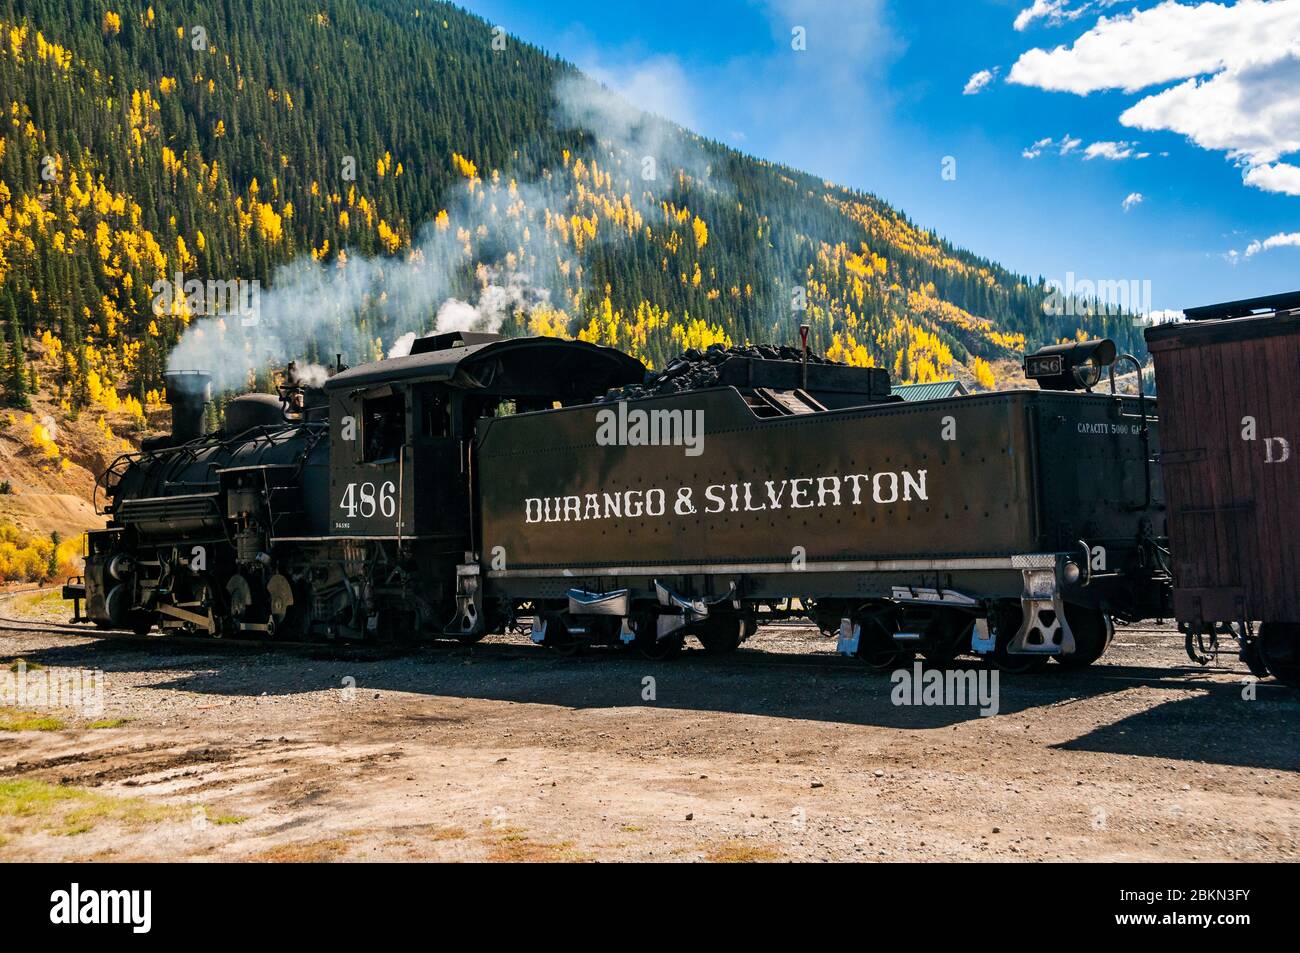 A Durango bound train waiting to depart Silverton on the Durango & Silverton Narrow Gauge Railway, Colorado, USA. Stock Photo